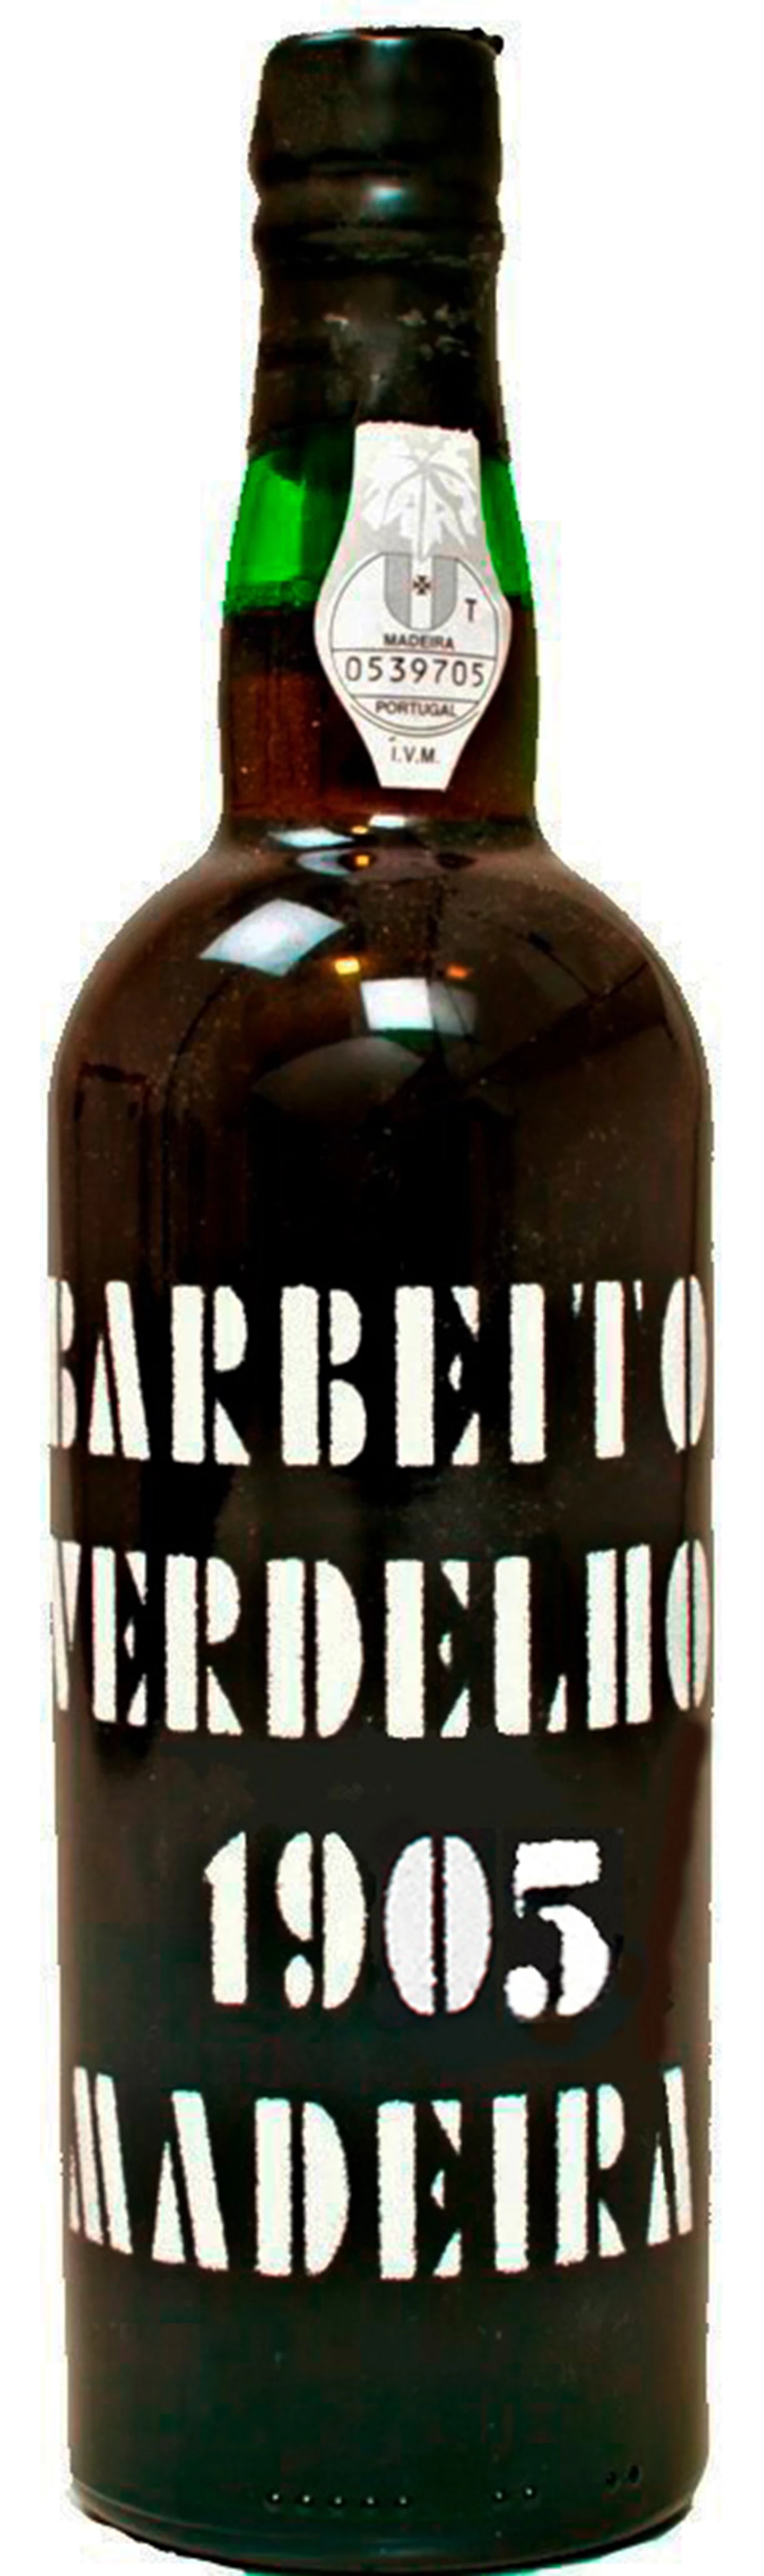 Barbeito_Madeira-Verdelho-1905